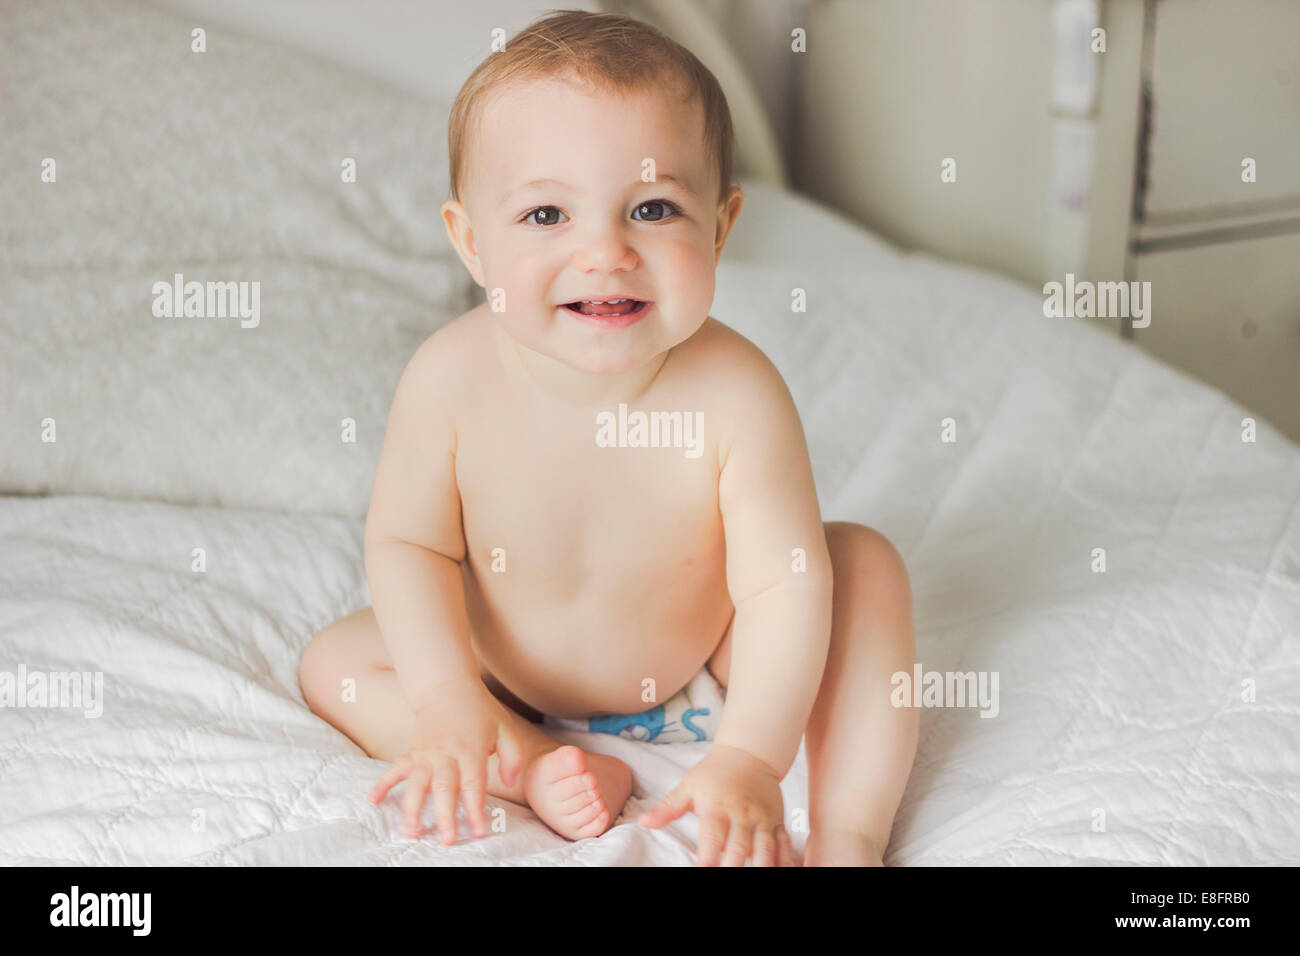 Portrait of Smiling baby sitting on lit dans la chambre Banque D'Images